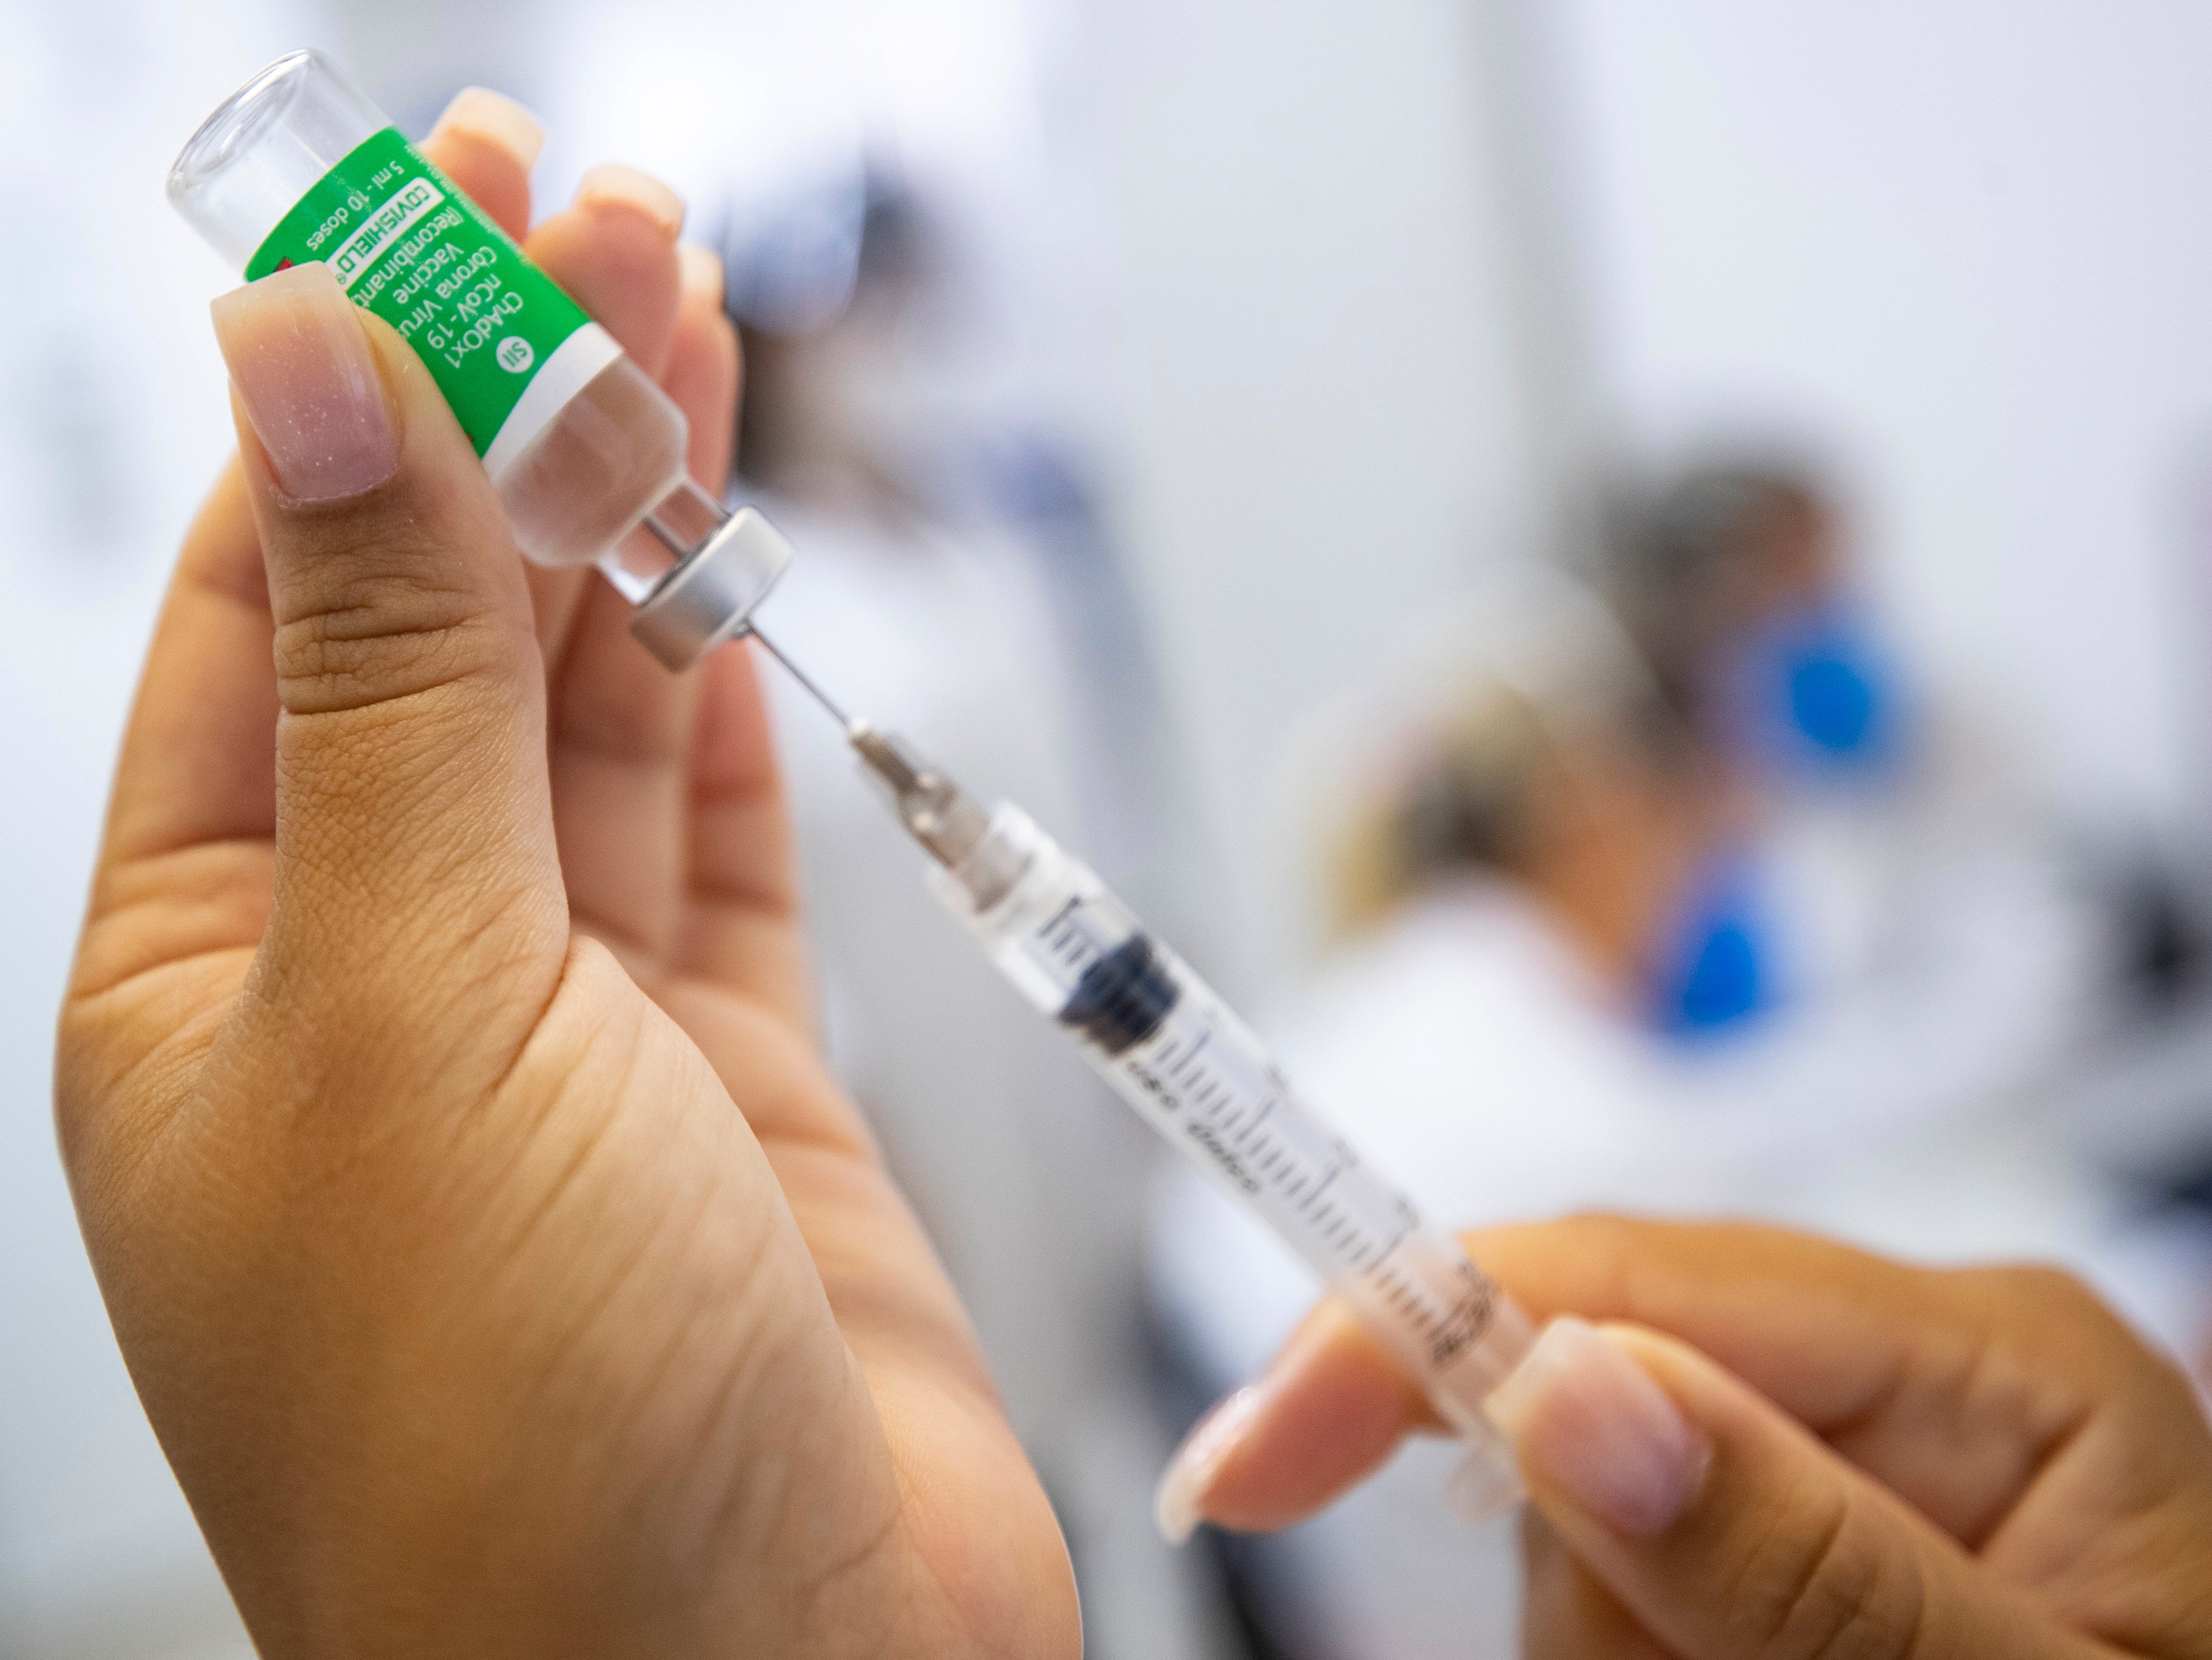 A nurse assistant prepares a dose of the AstraZeneca vaccine